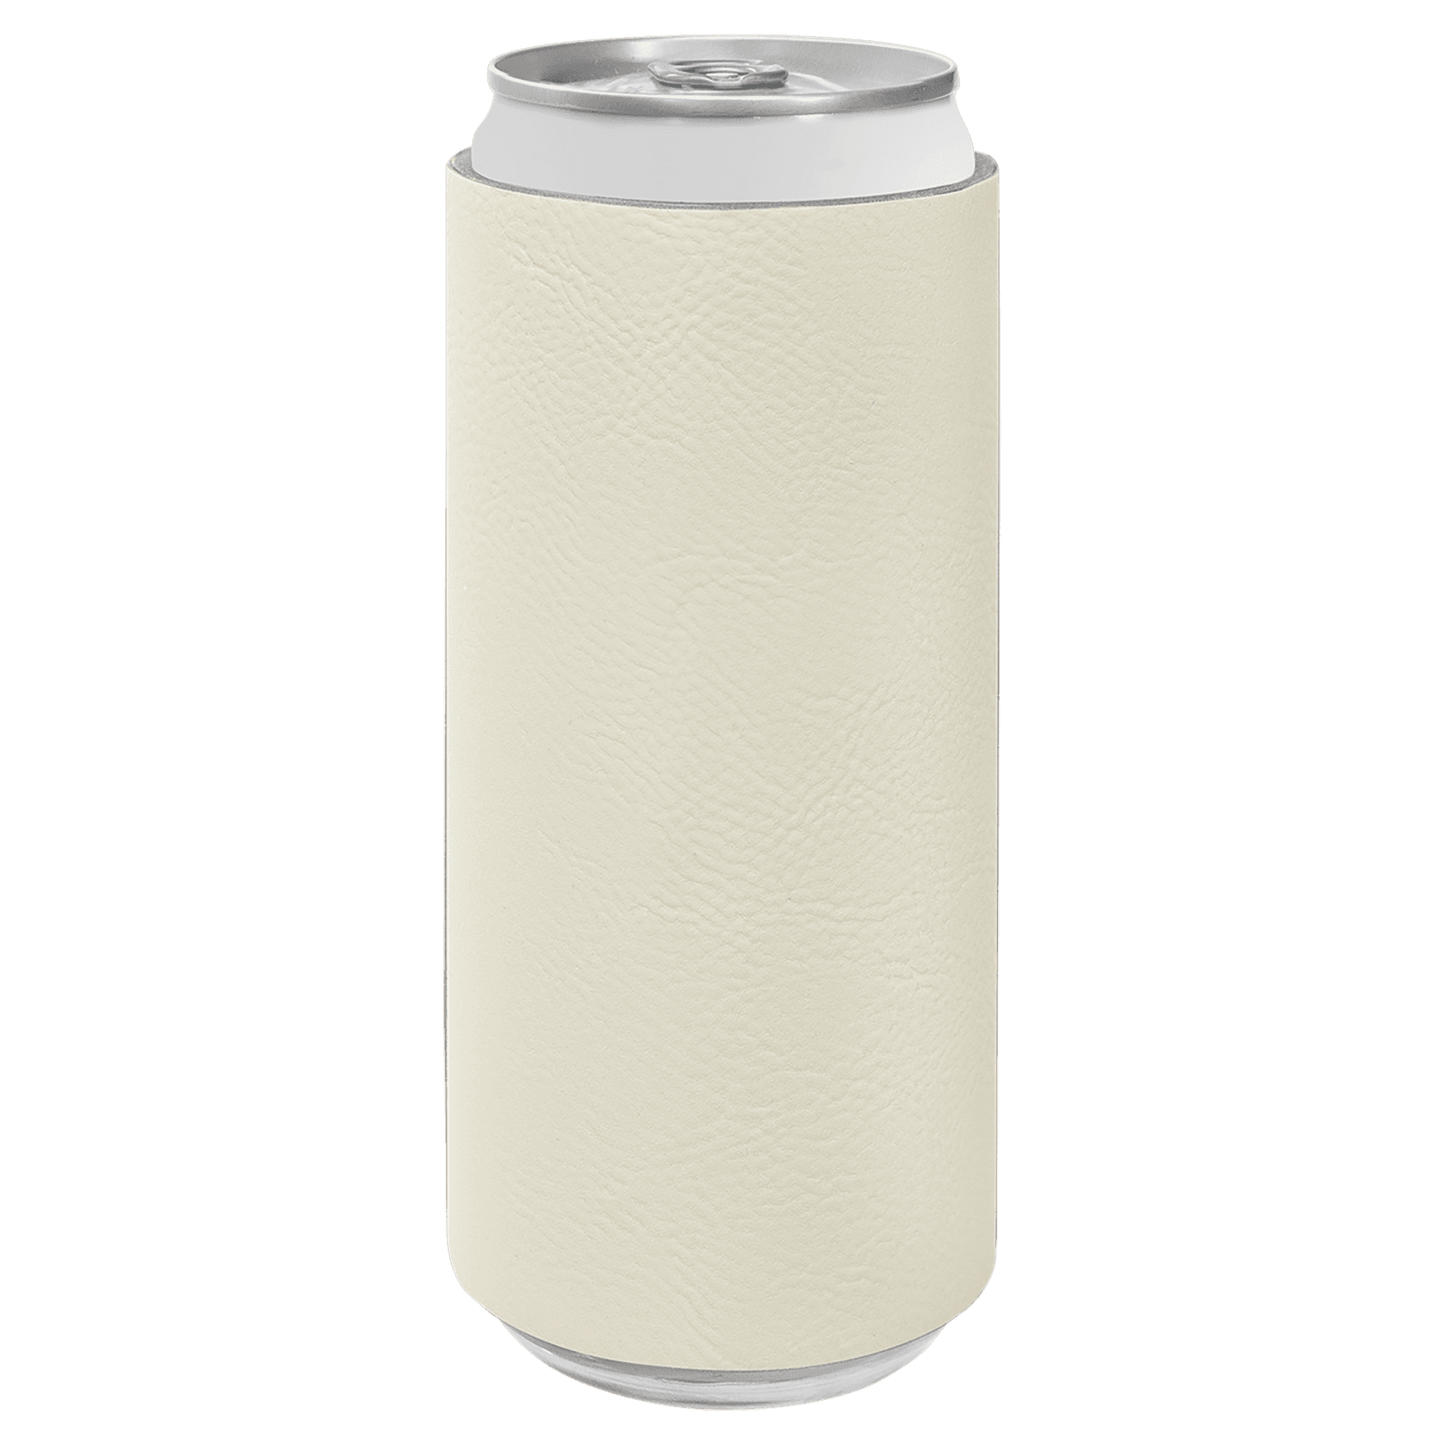 Laserable Leatherette Slim Beverage Holder